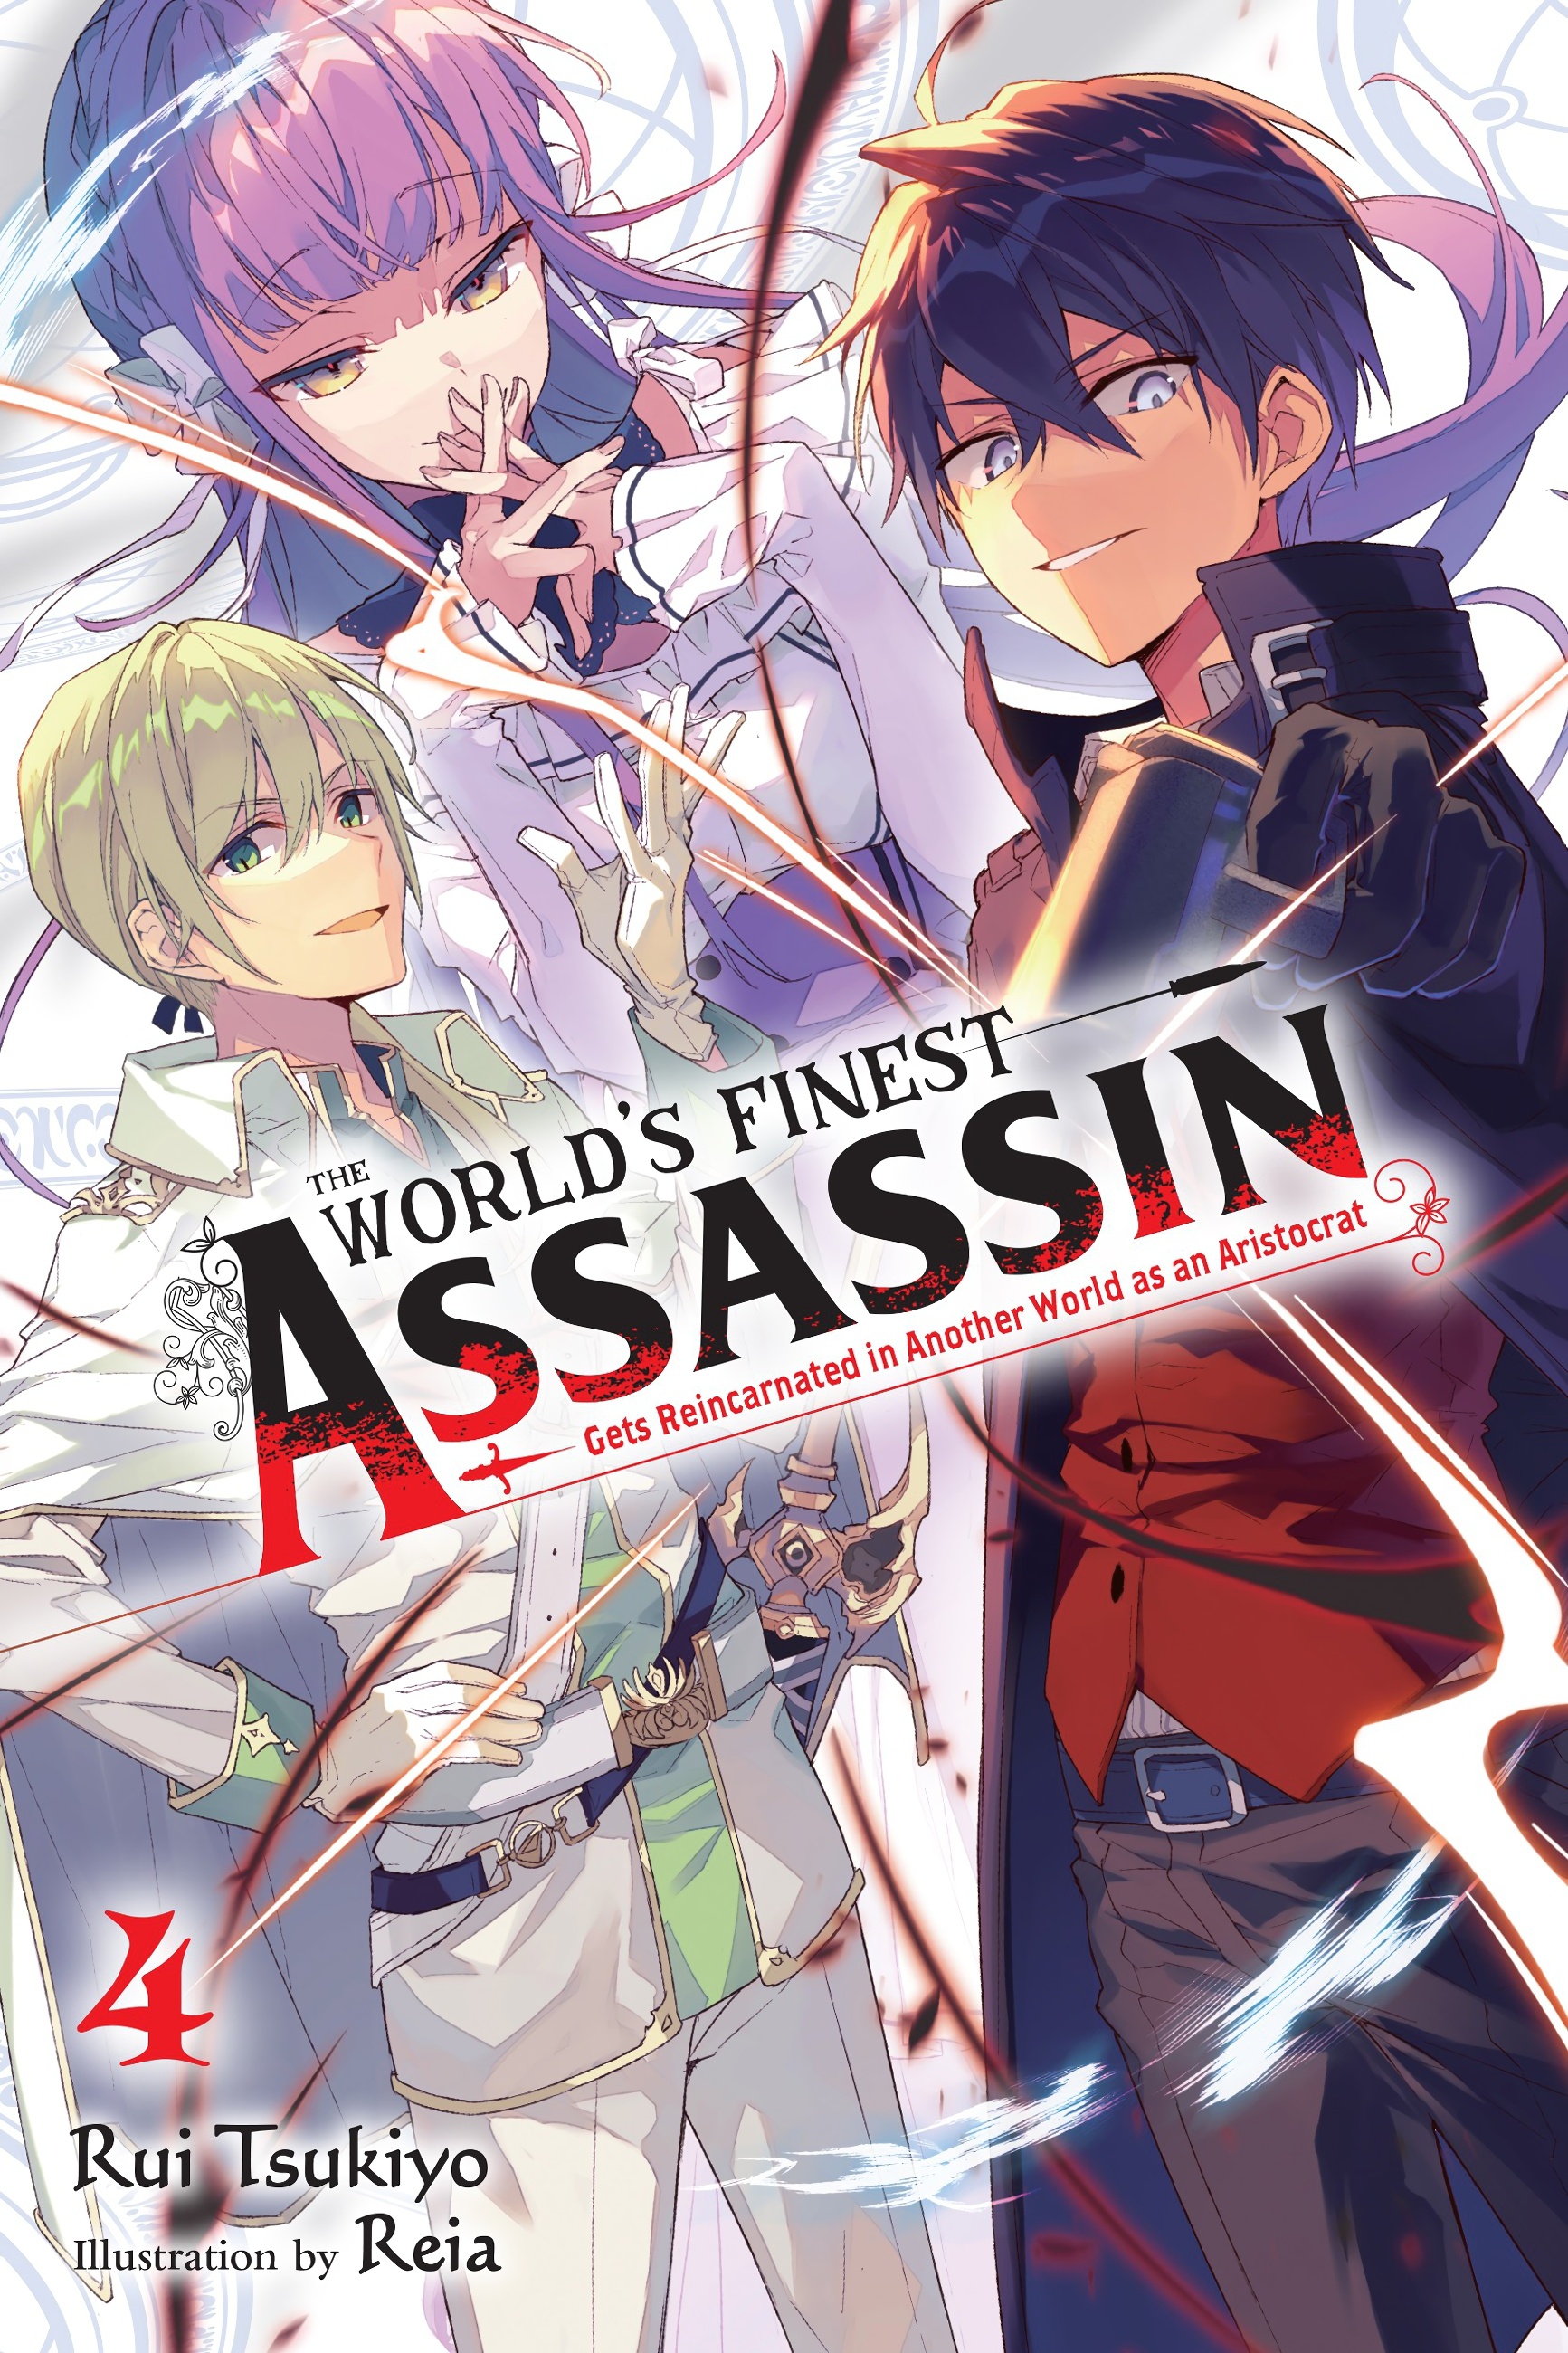 Sekai Saikou no Ansatsusha The World's Finest Assassin Gets